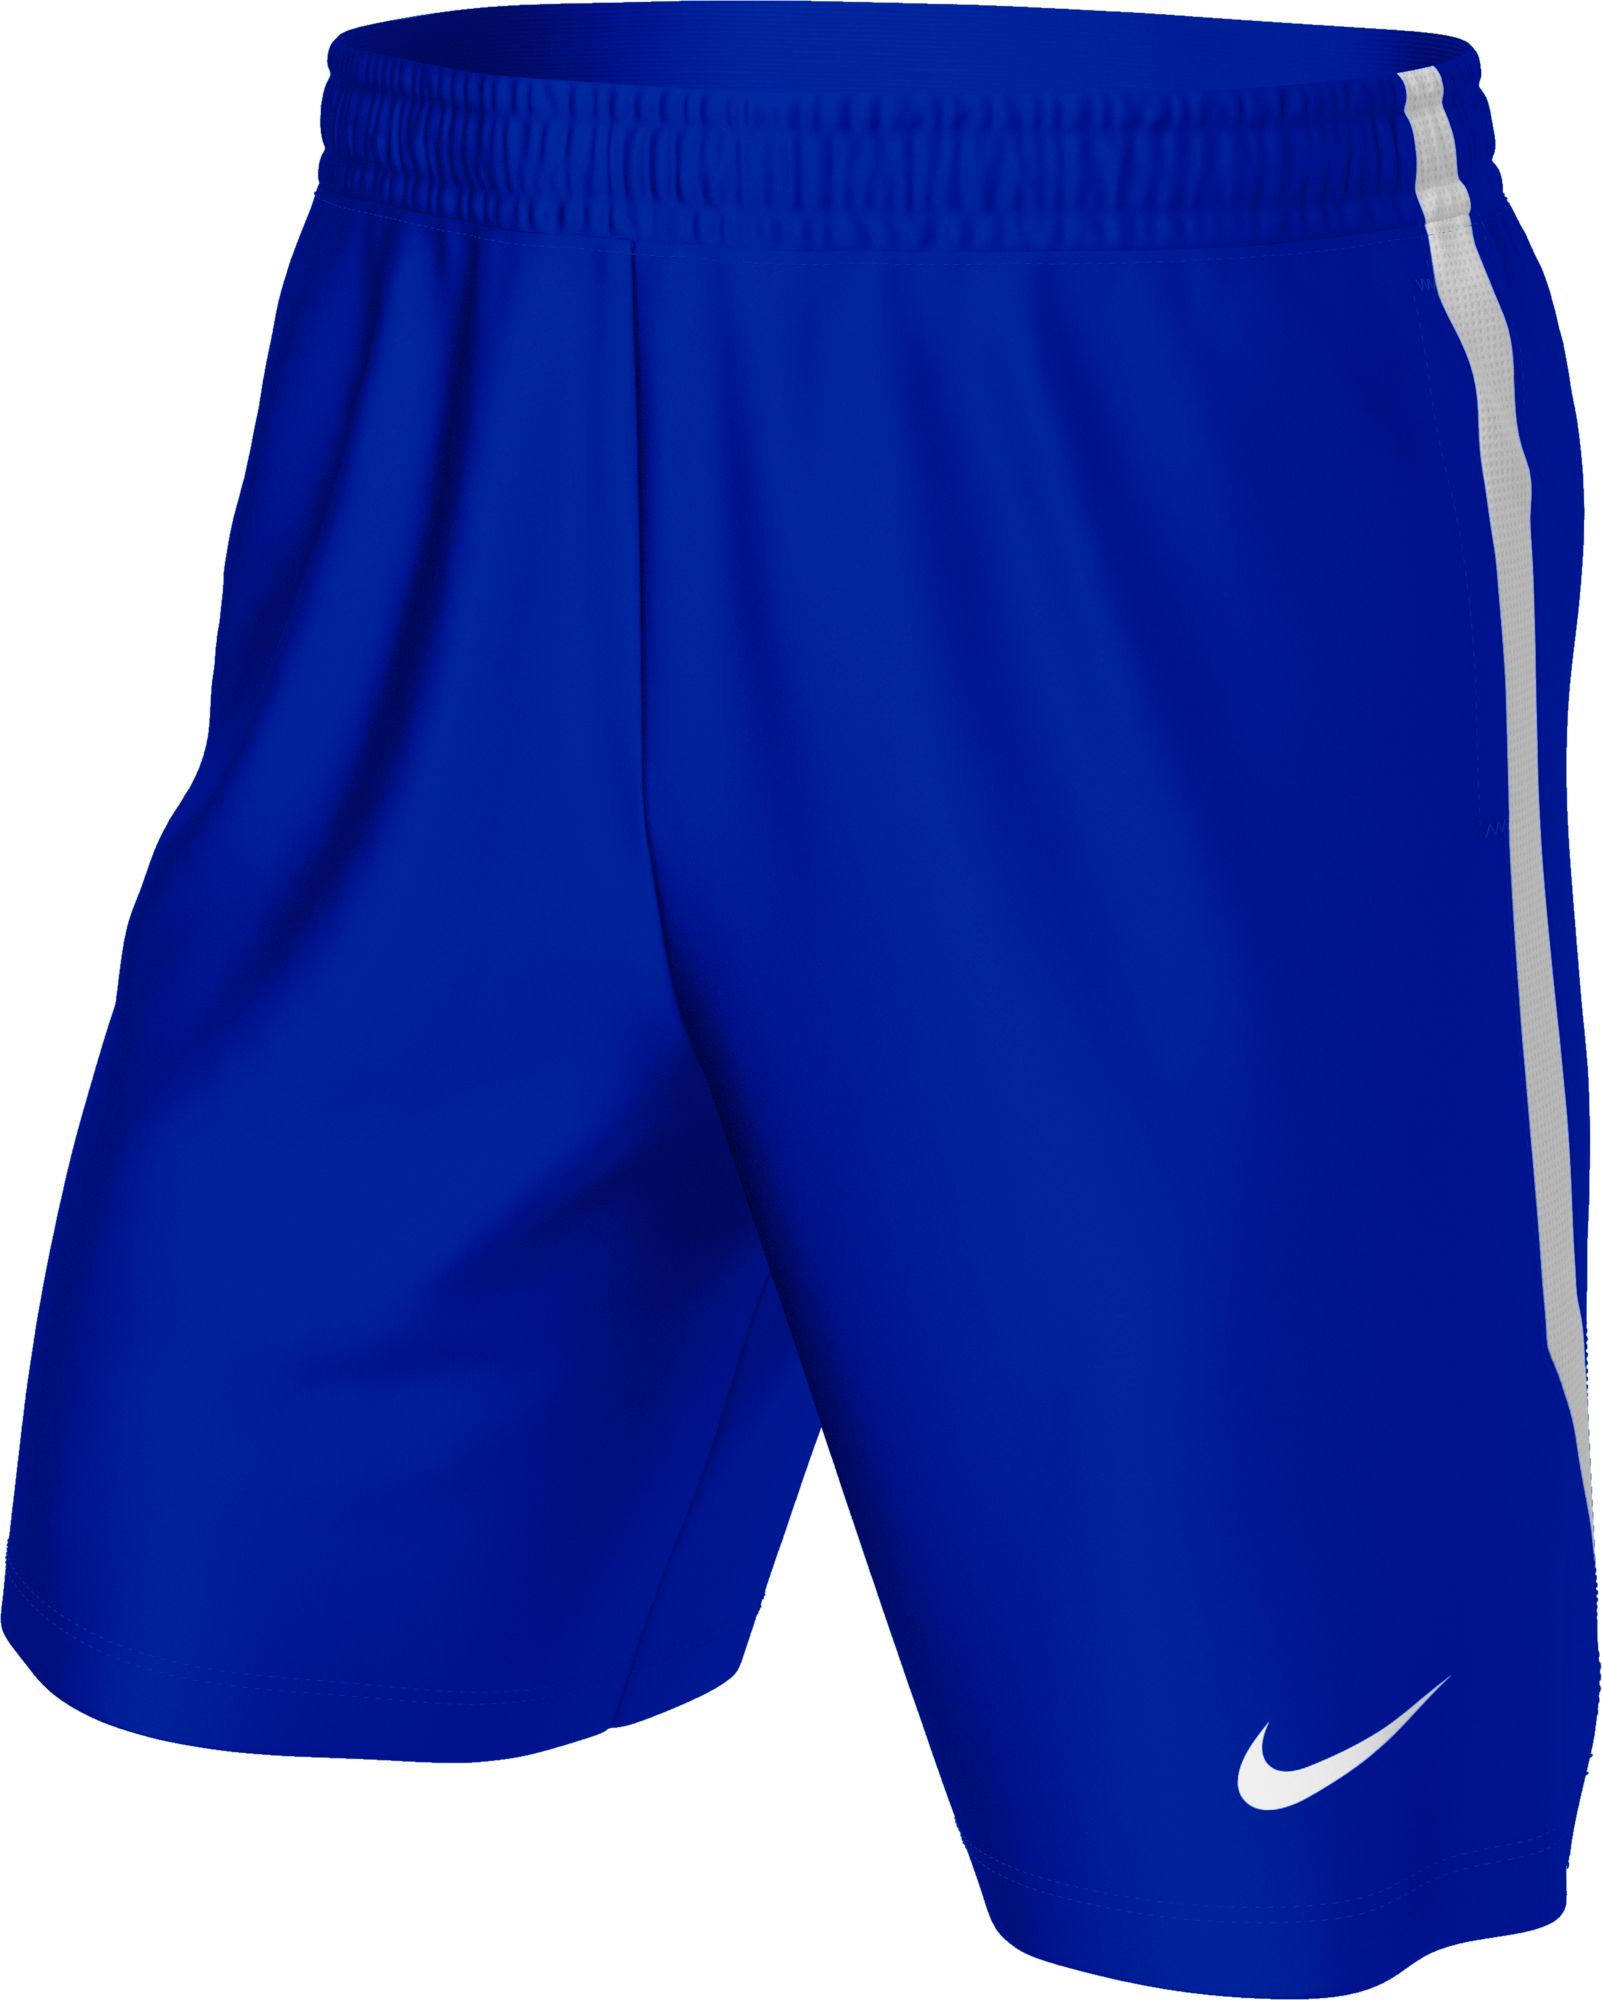 blue nike soccer shorts